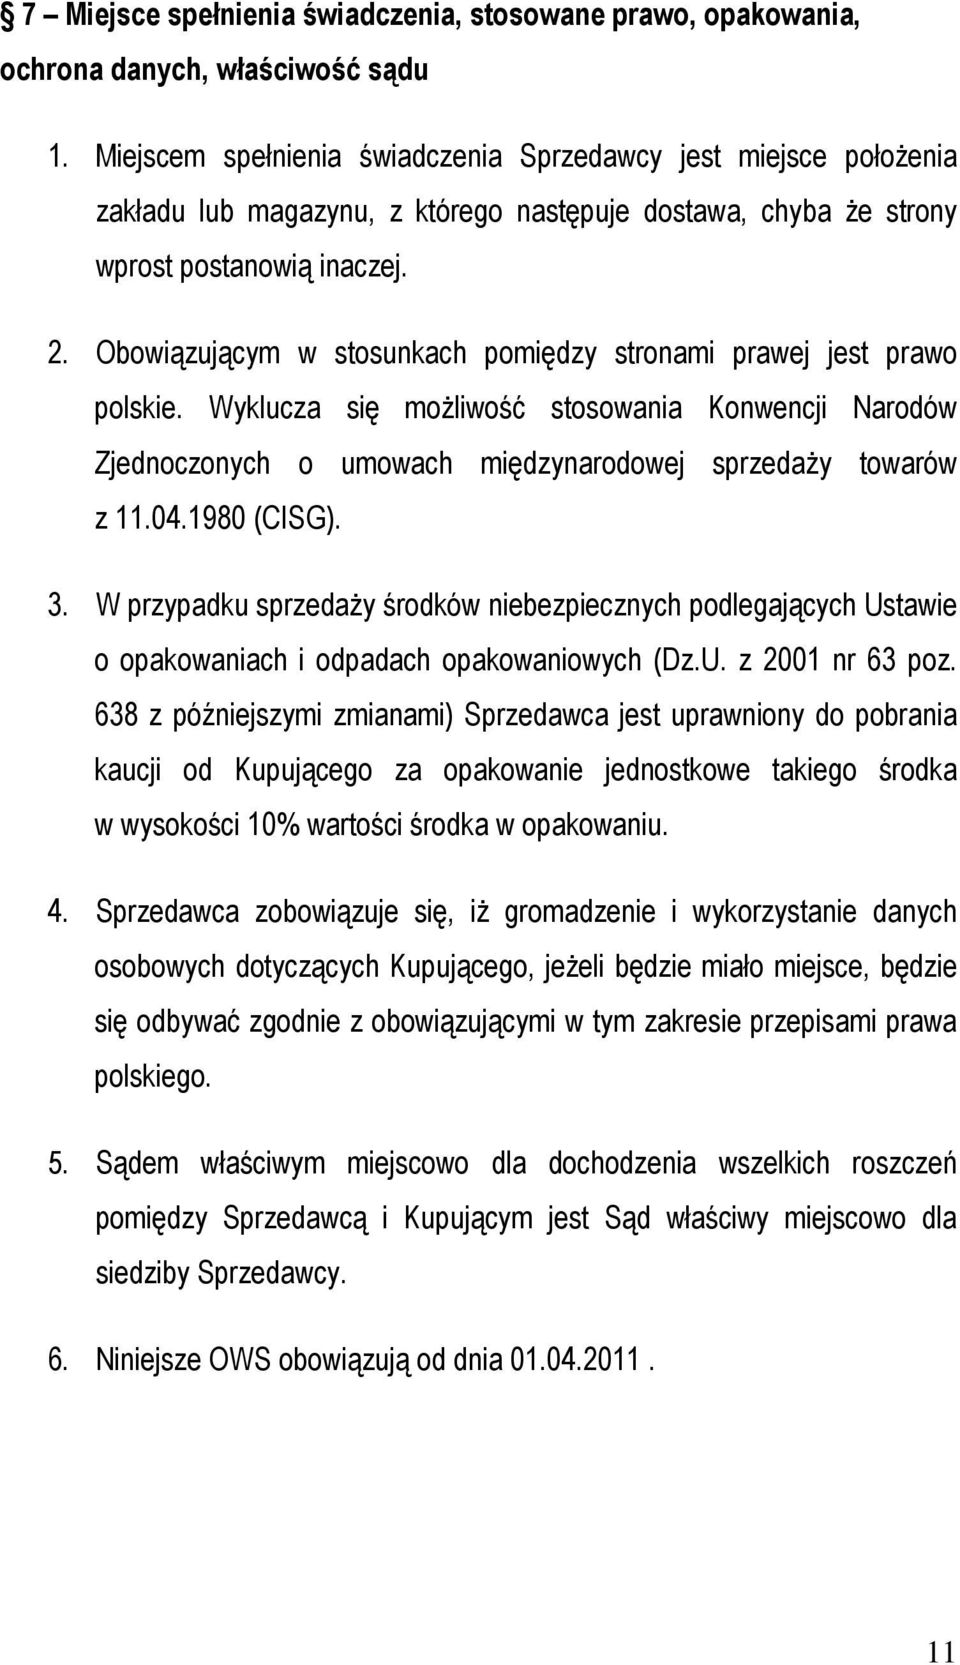 Obowiązującym w stosunkach pomiędzy stronami prawej jest prawo polskie. Wyklucza się możliwość stosowania Konwencji Narodów Zjednoczonych o umowach międzynarodowej sprzedaży towarów z 11.04.